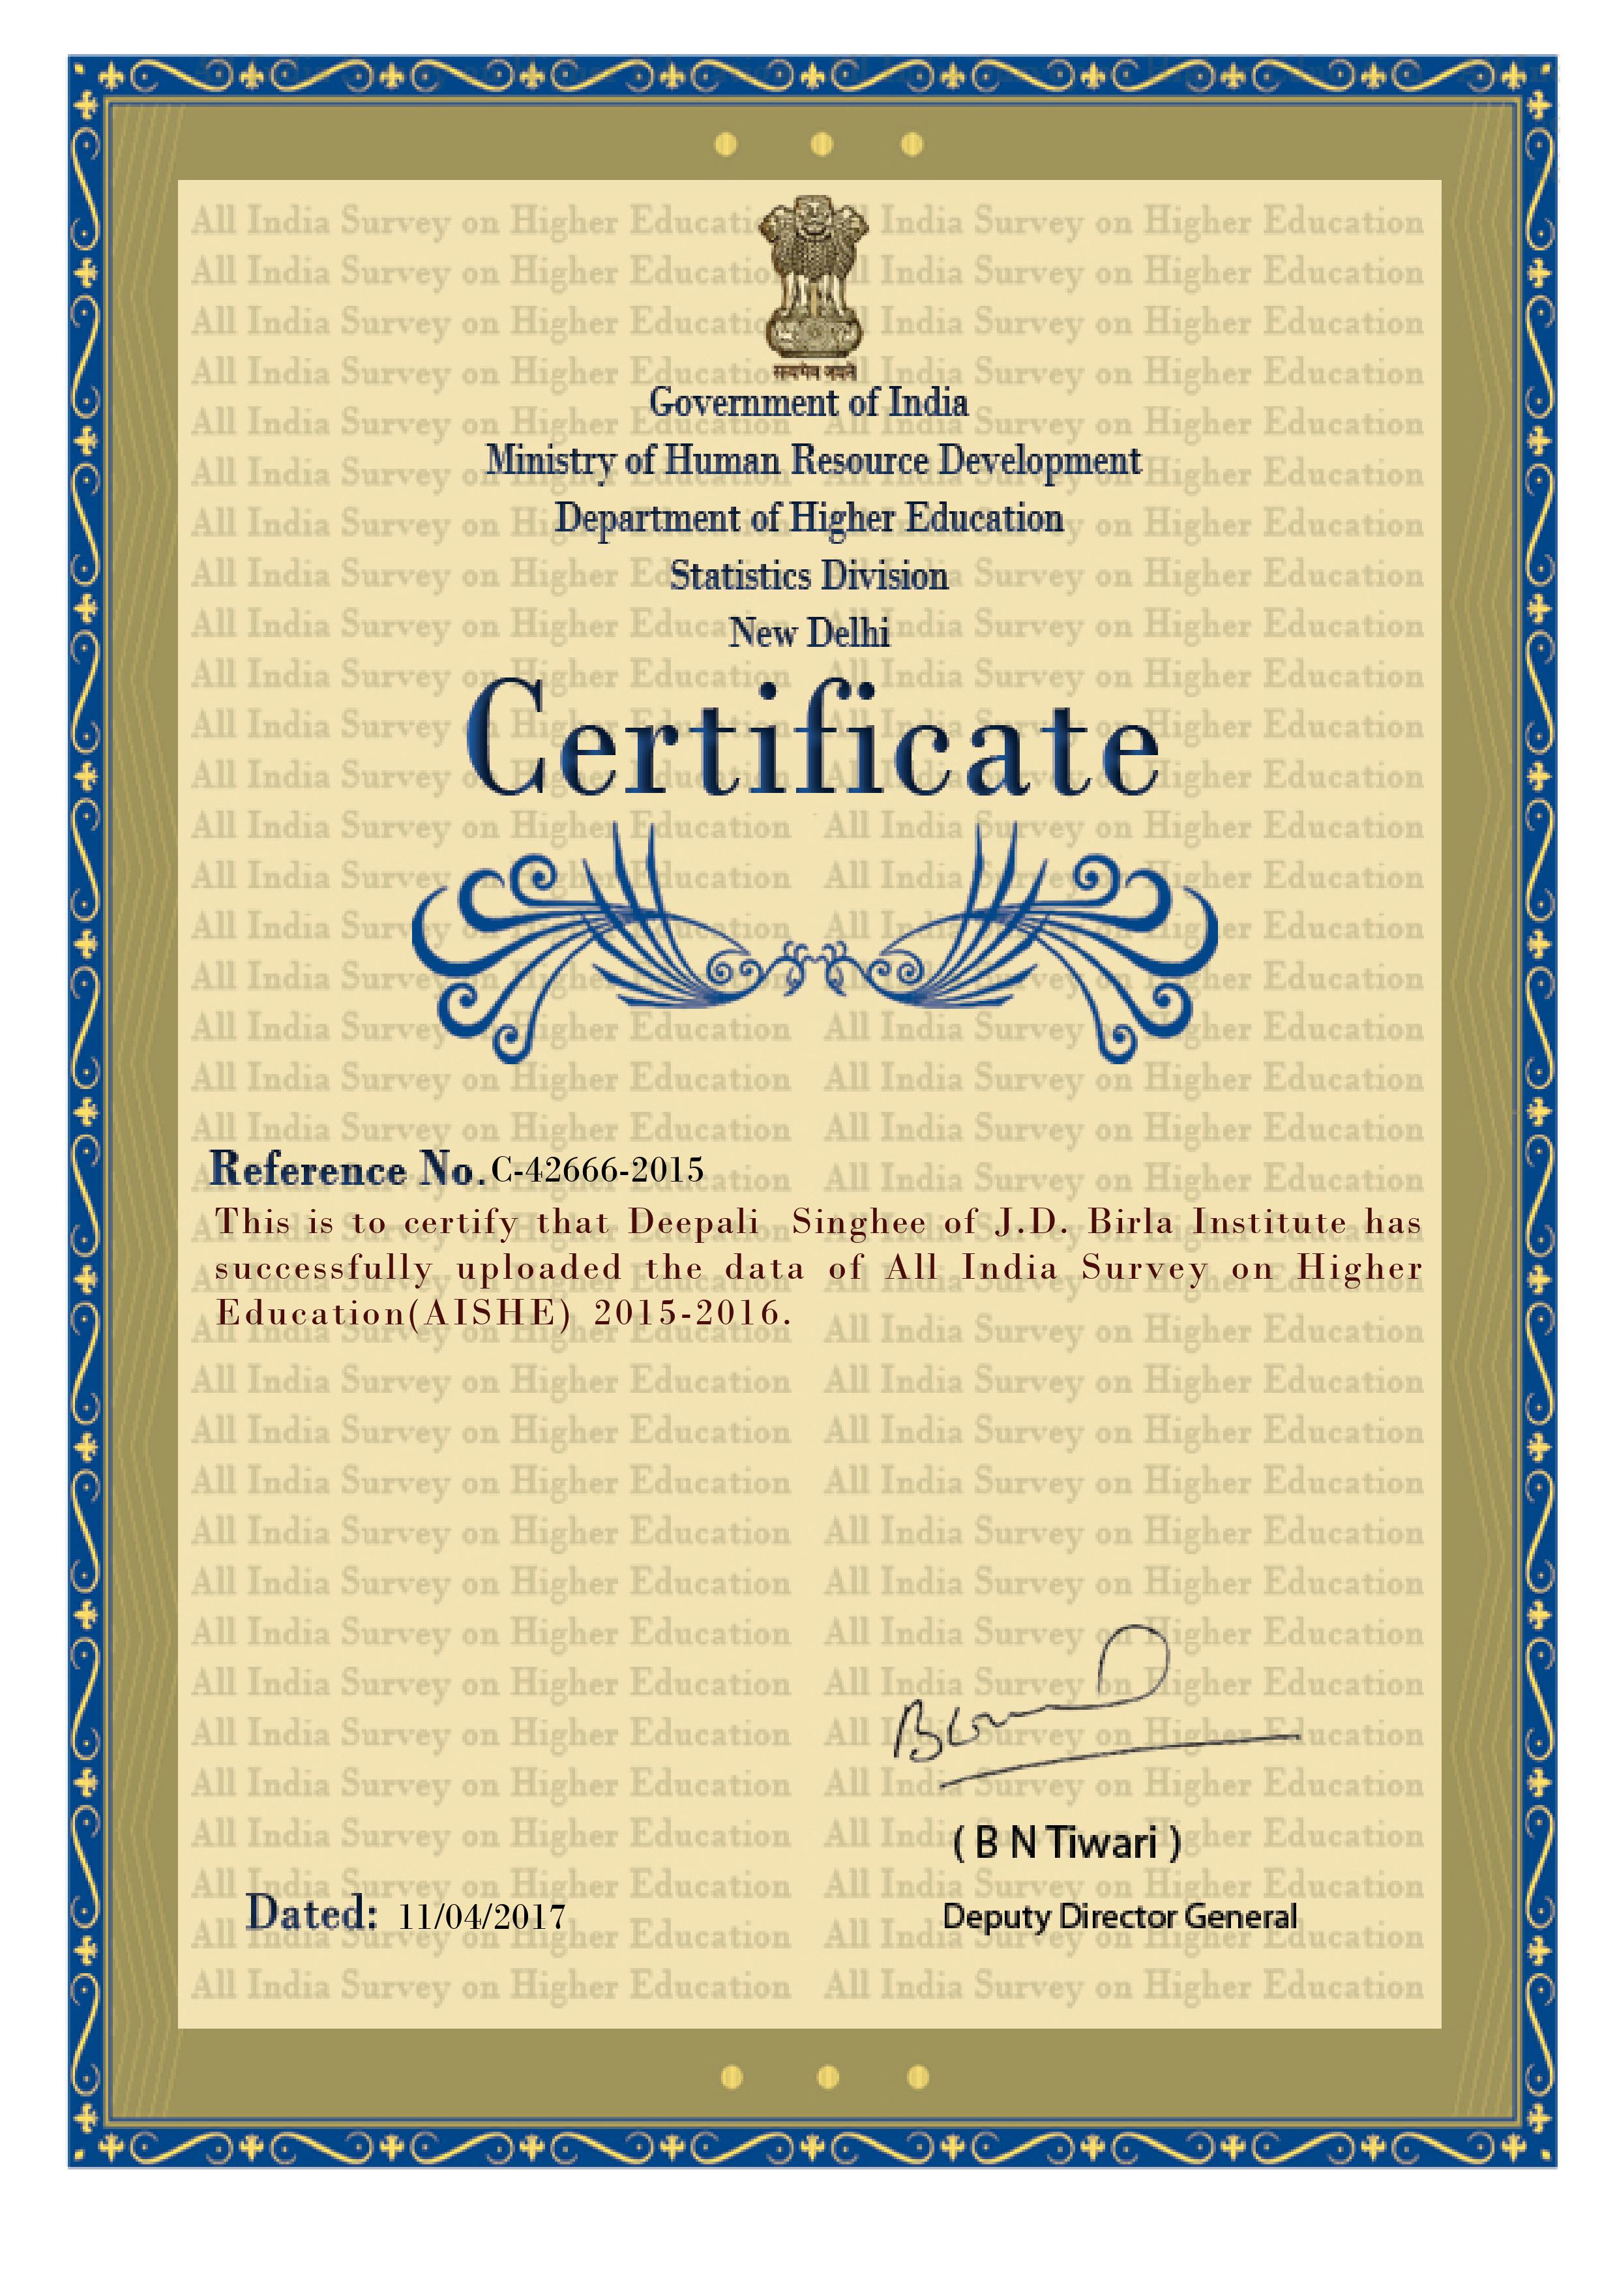 Certificate 2015-2016 